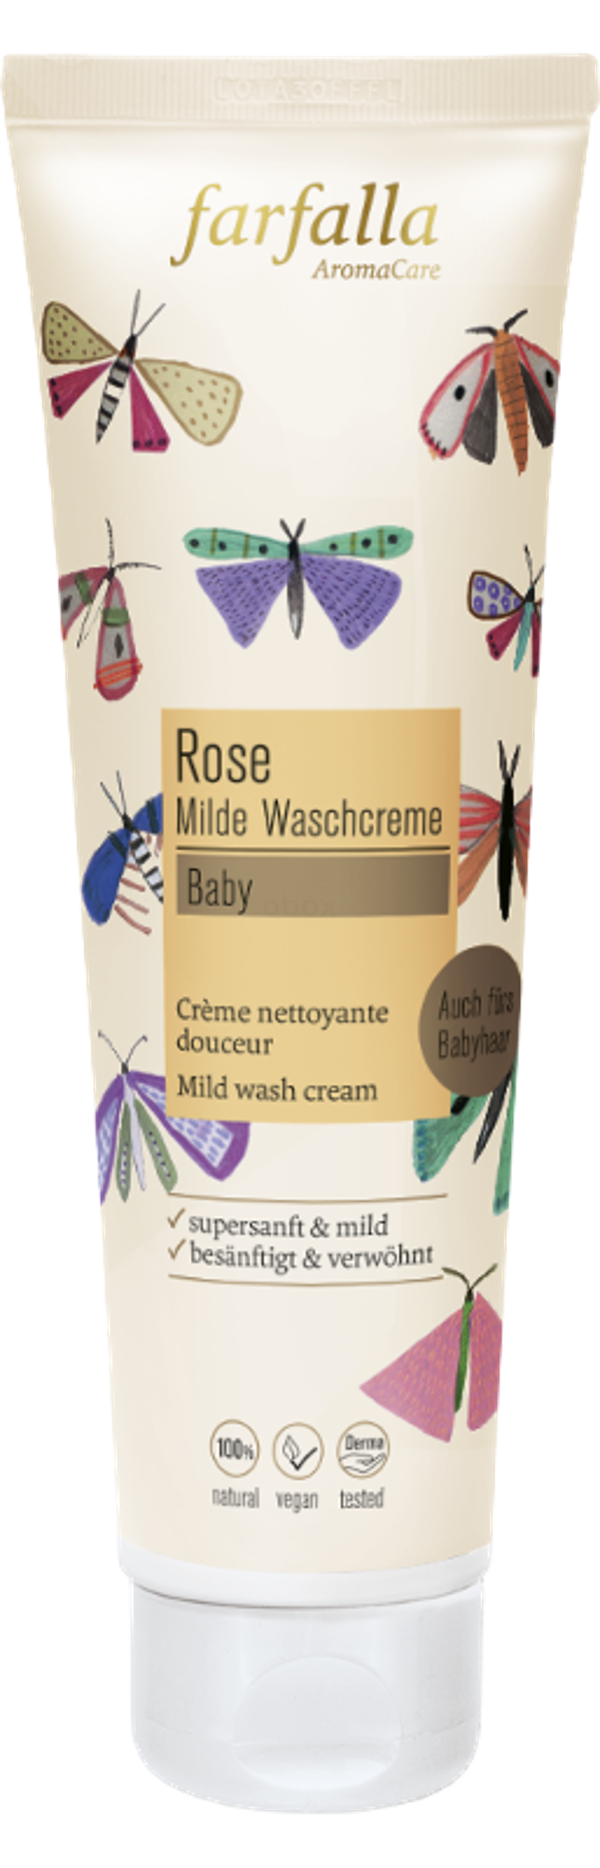 Produktfoto zu Baby Milde Waschcreme Rose